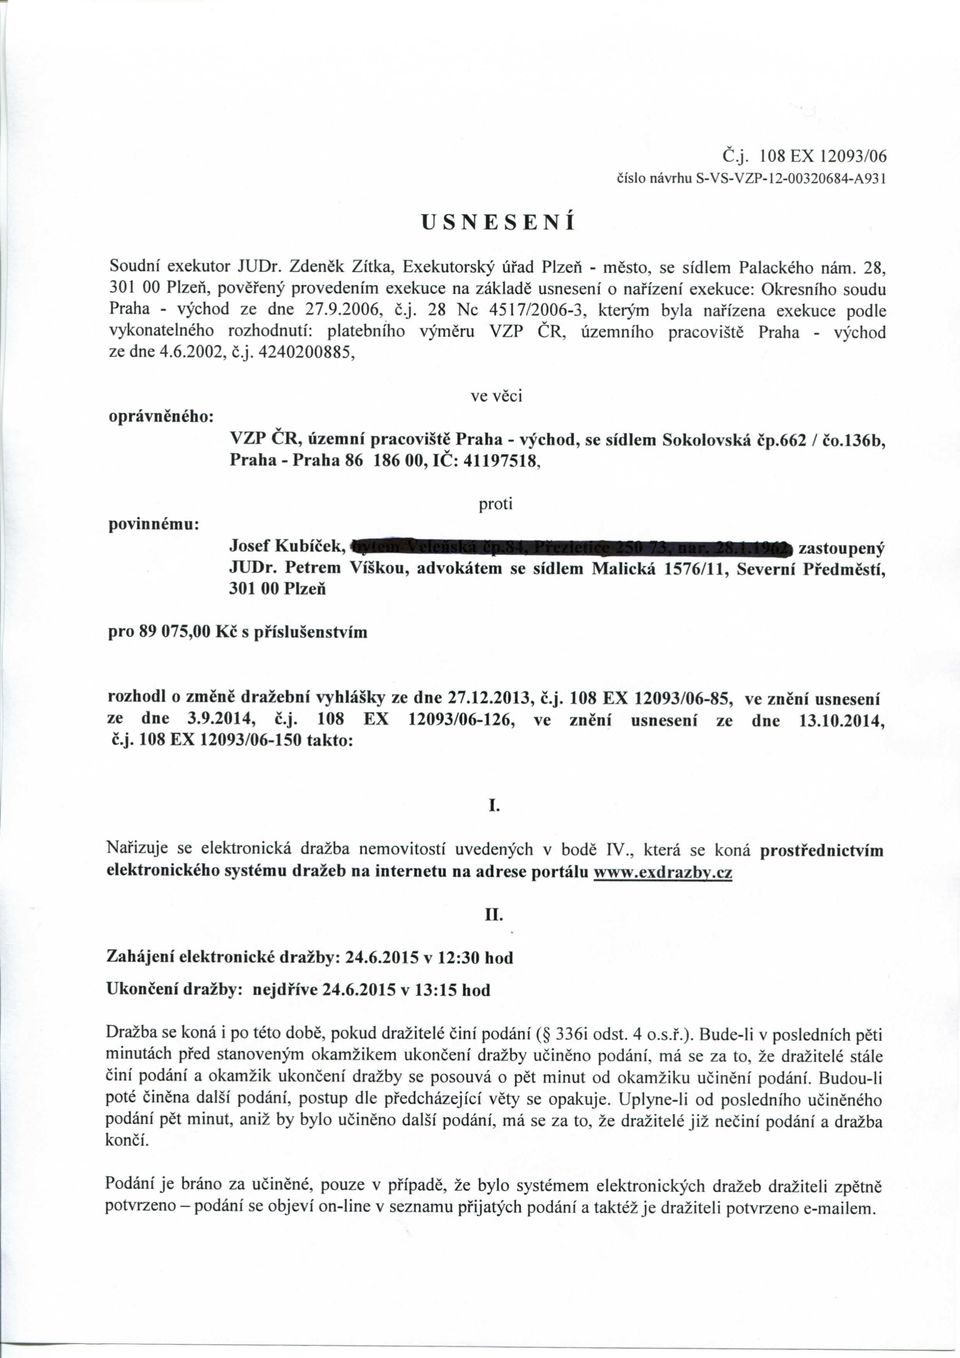 28 Nc 4517/2006-3, kterym byla nafizena exekuce podle vykonatelneho rozhodnuti: platebniho vymeru VZP CR, uzemniho pracoviste Praha - vychod ze dne 4.6.2002, c.j.